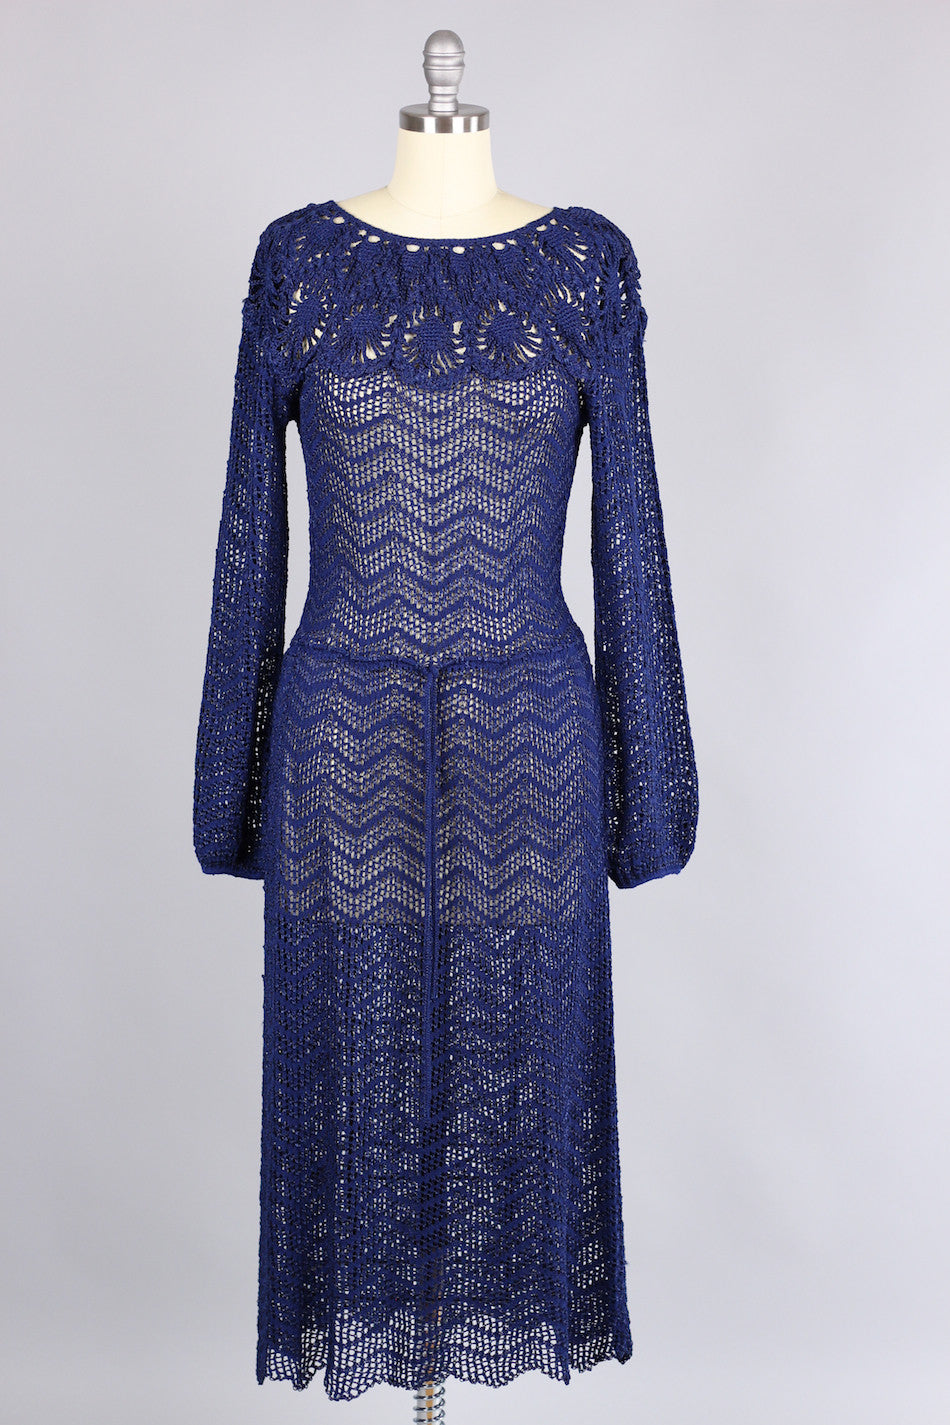 Vintage 1930s Navy Rayon Knit Dress